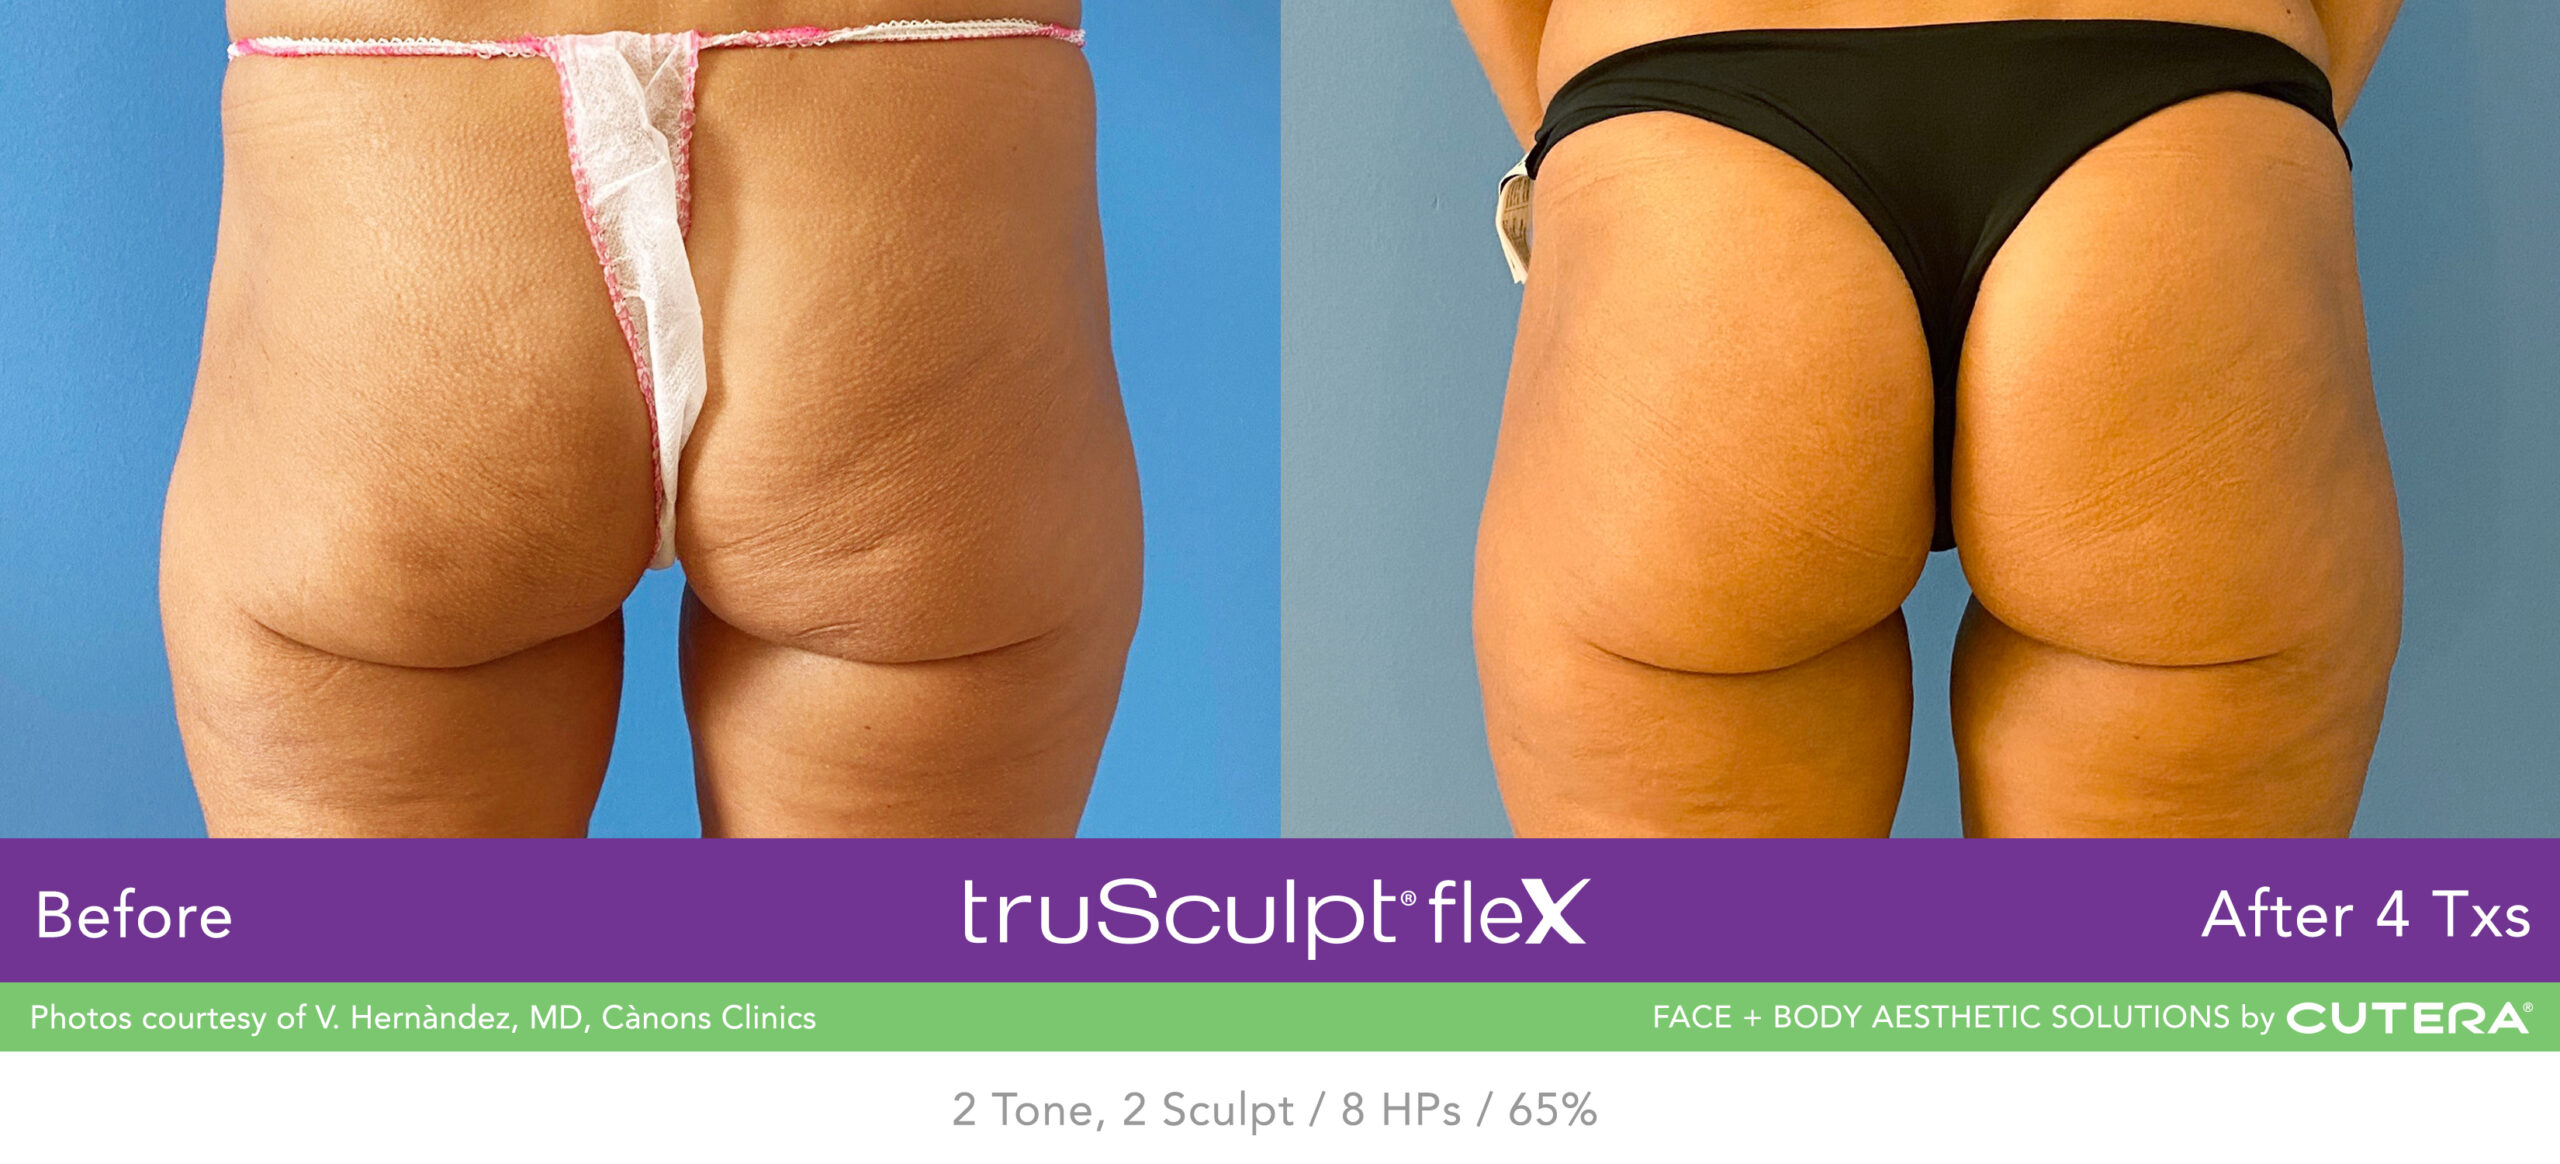 Trusculpt Flex – Before & After – Buttocks 5